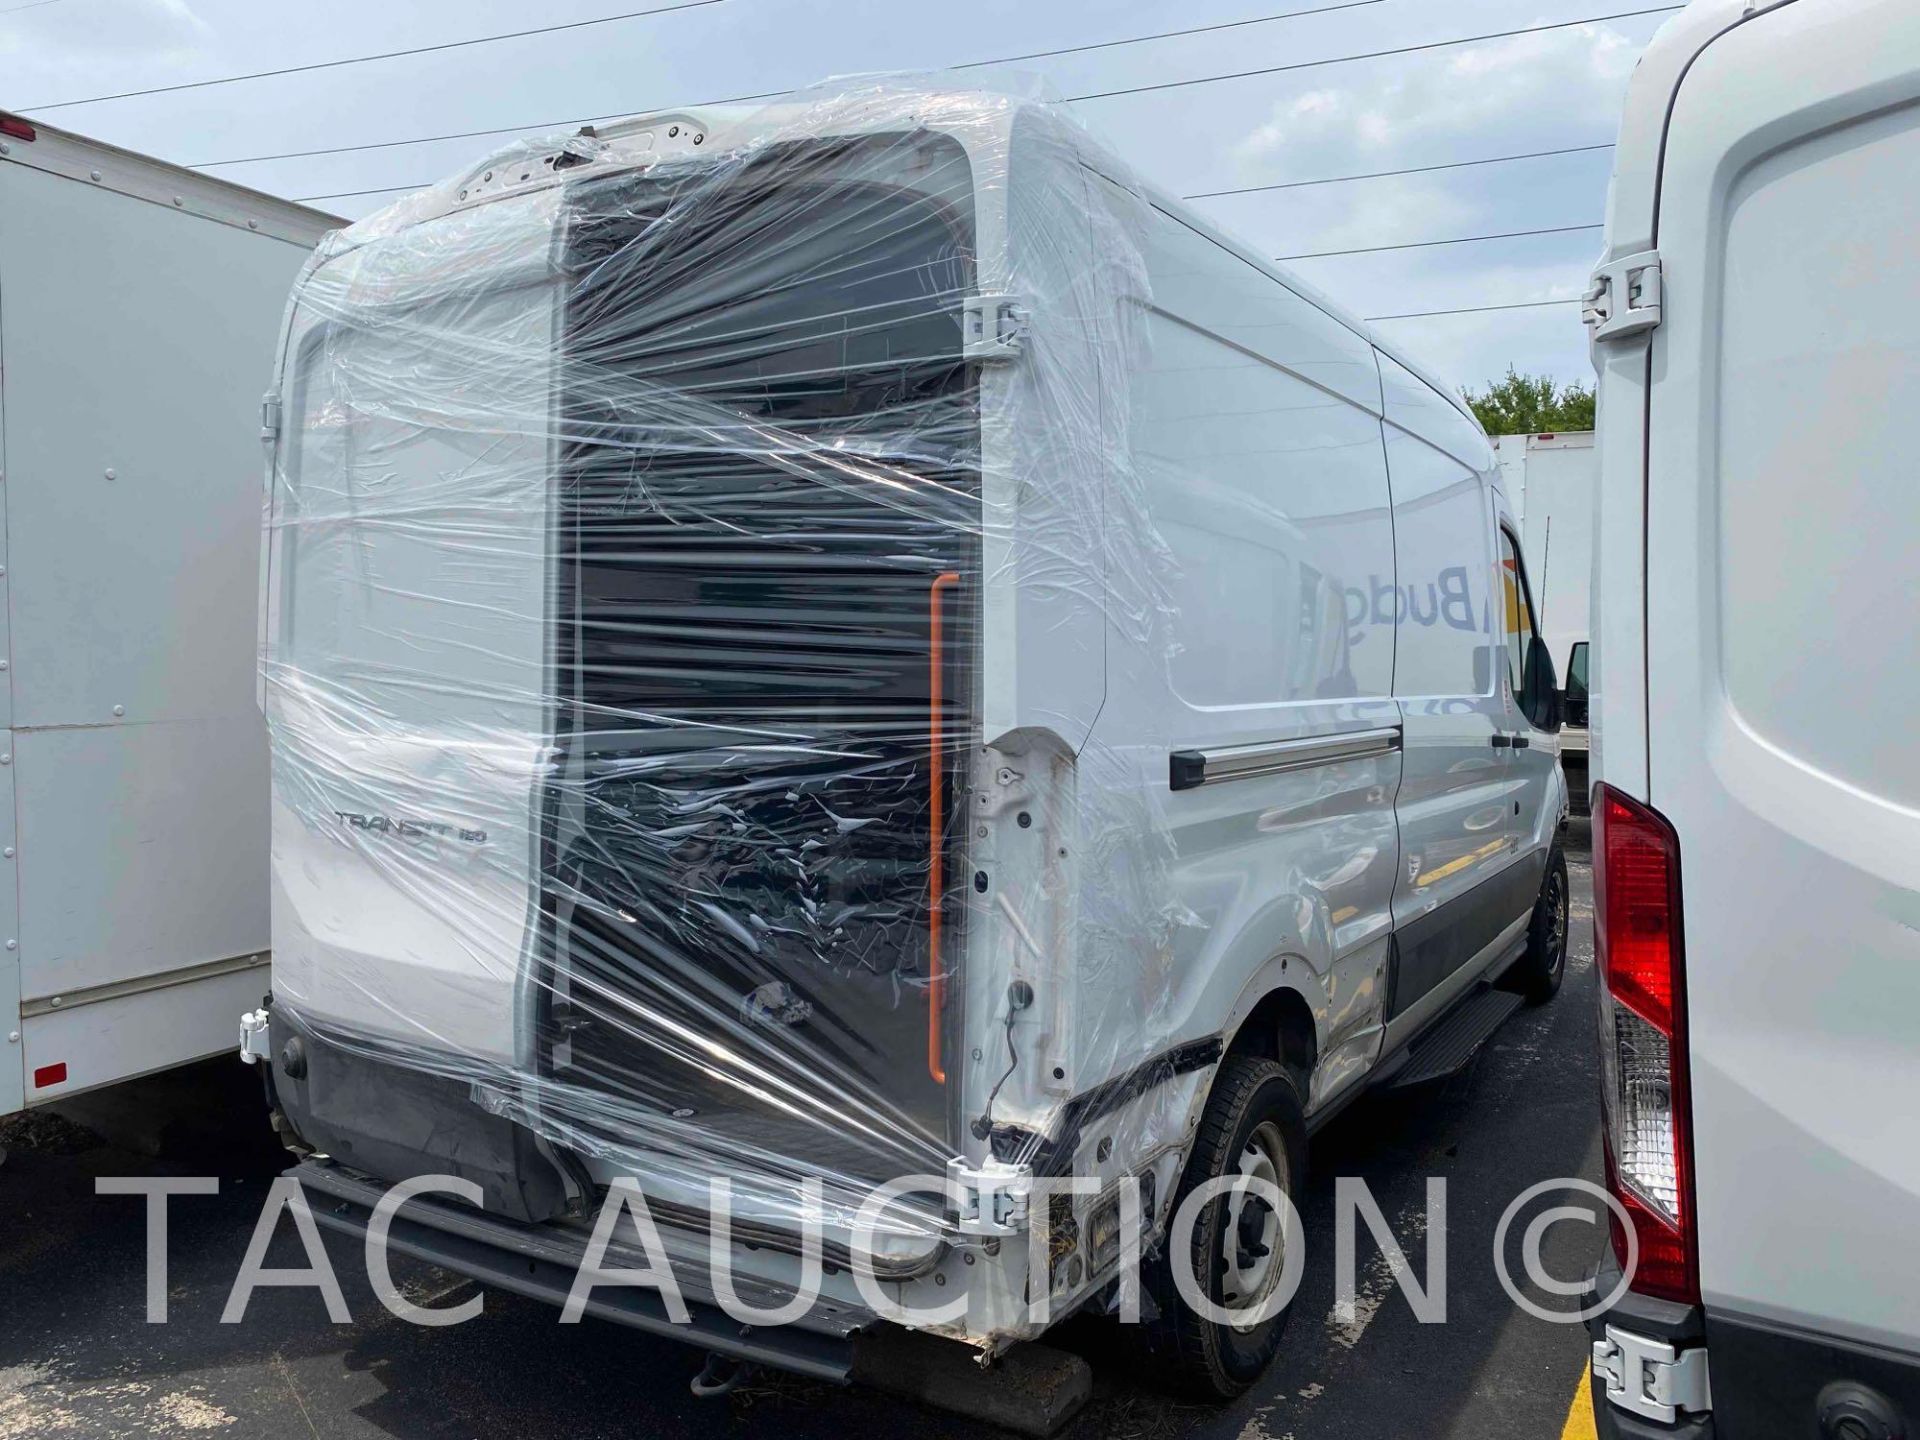 2019 Ford Transit 150 Cargo Van - Image 4 of 42